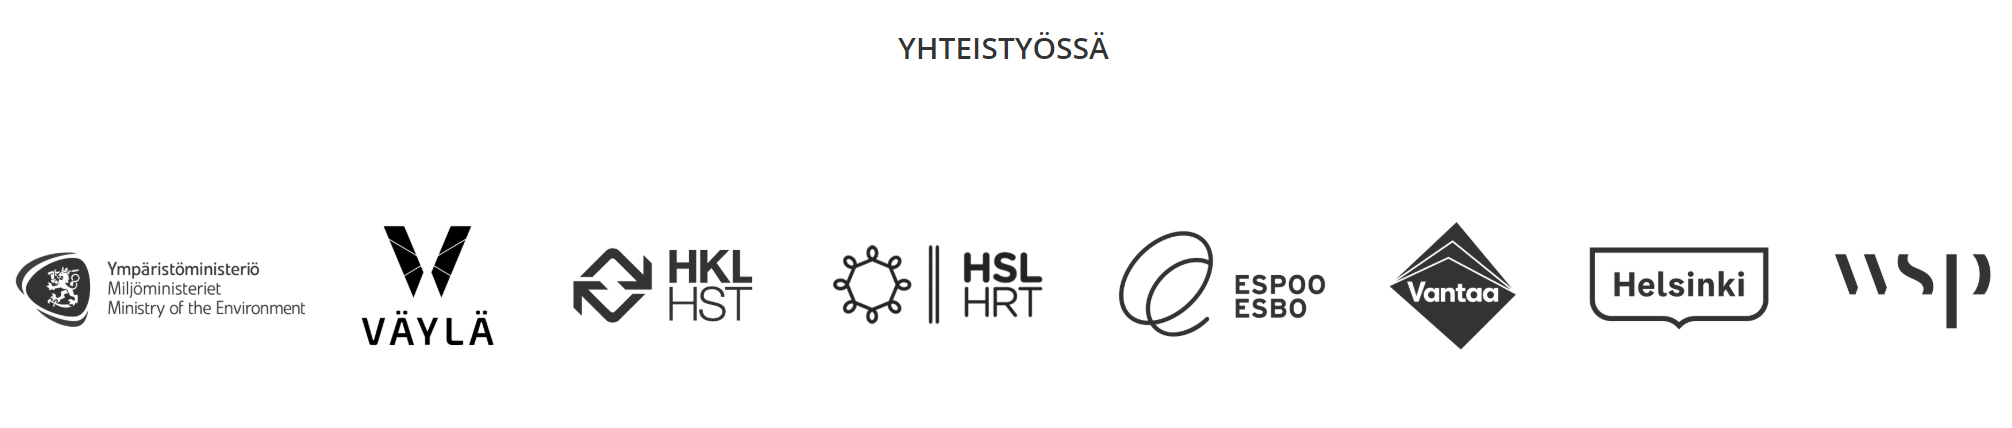 Yhteistyössä olevien organisaatioiden logot.